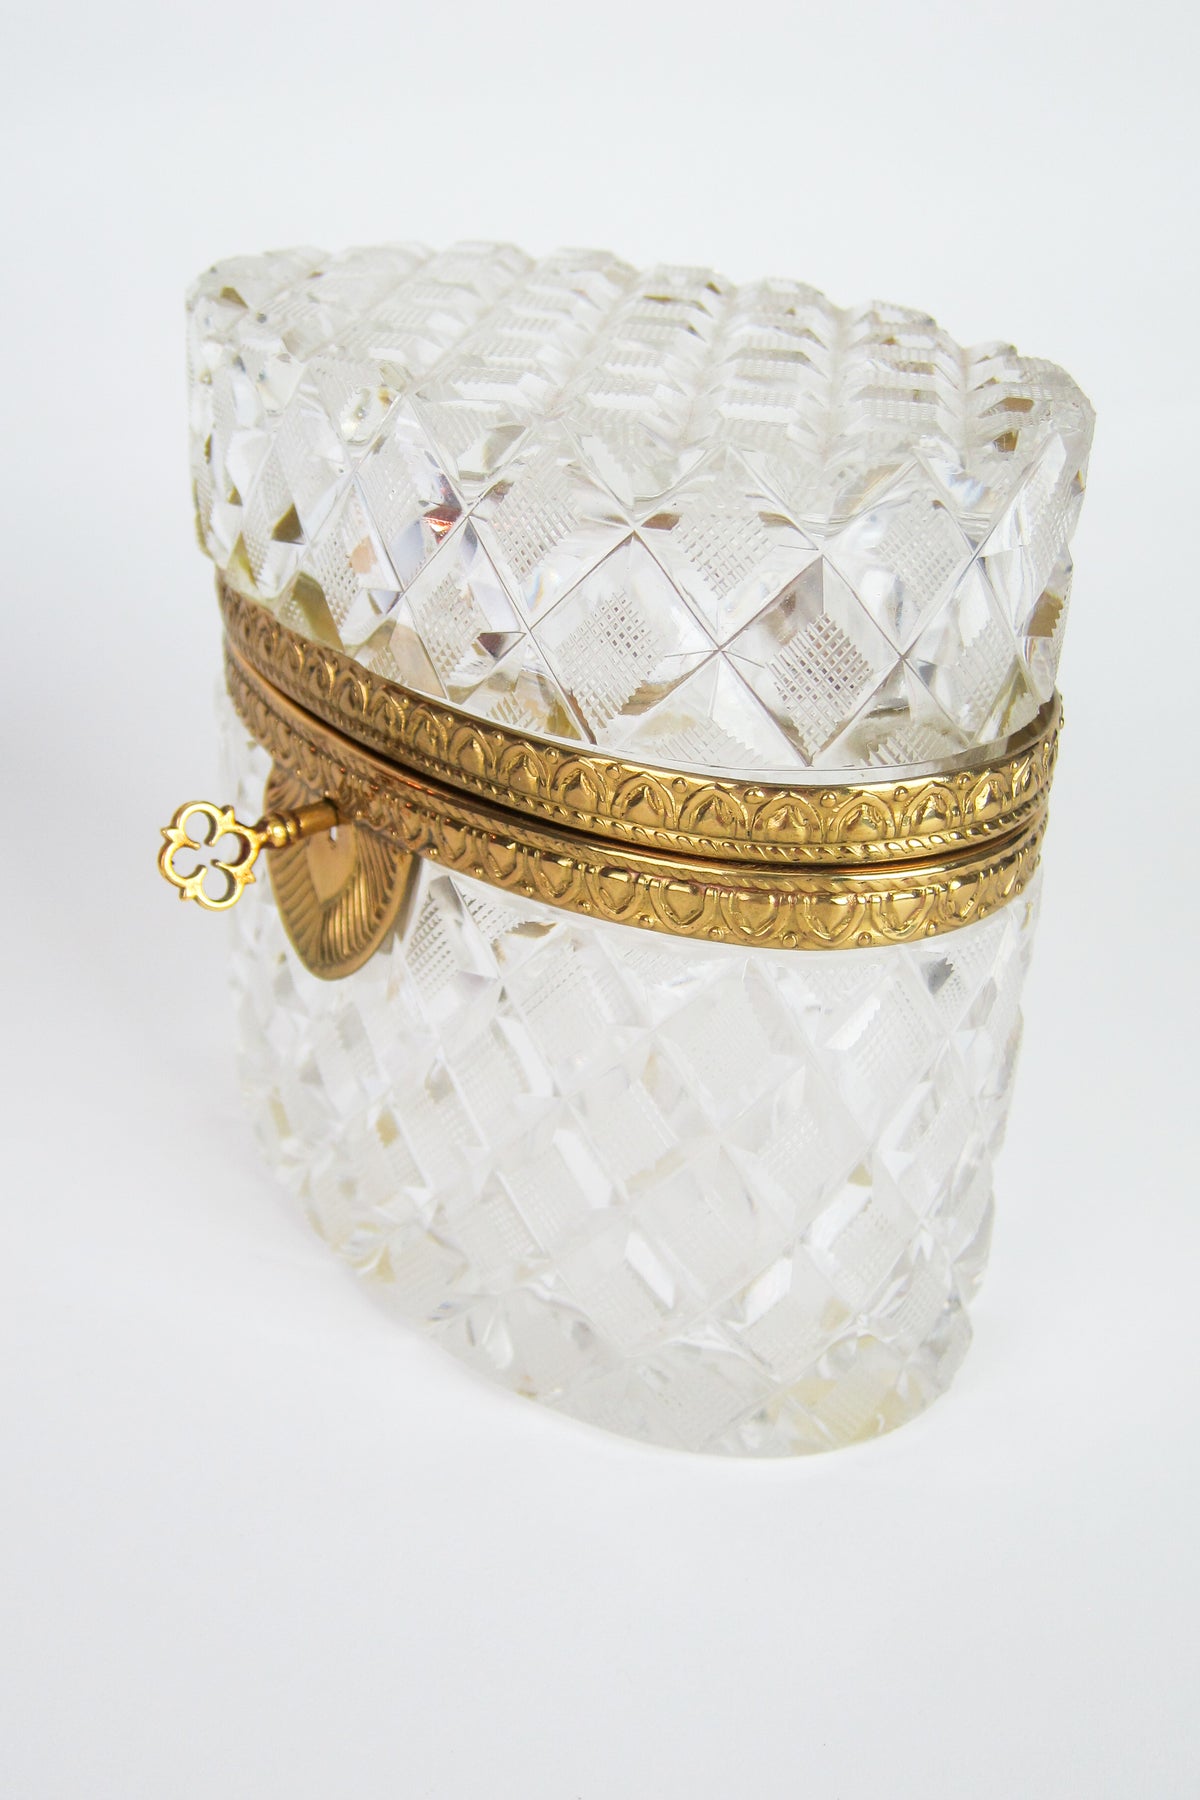 Vintage Cut Crystal Gold Ormolu Box / Casket with Key